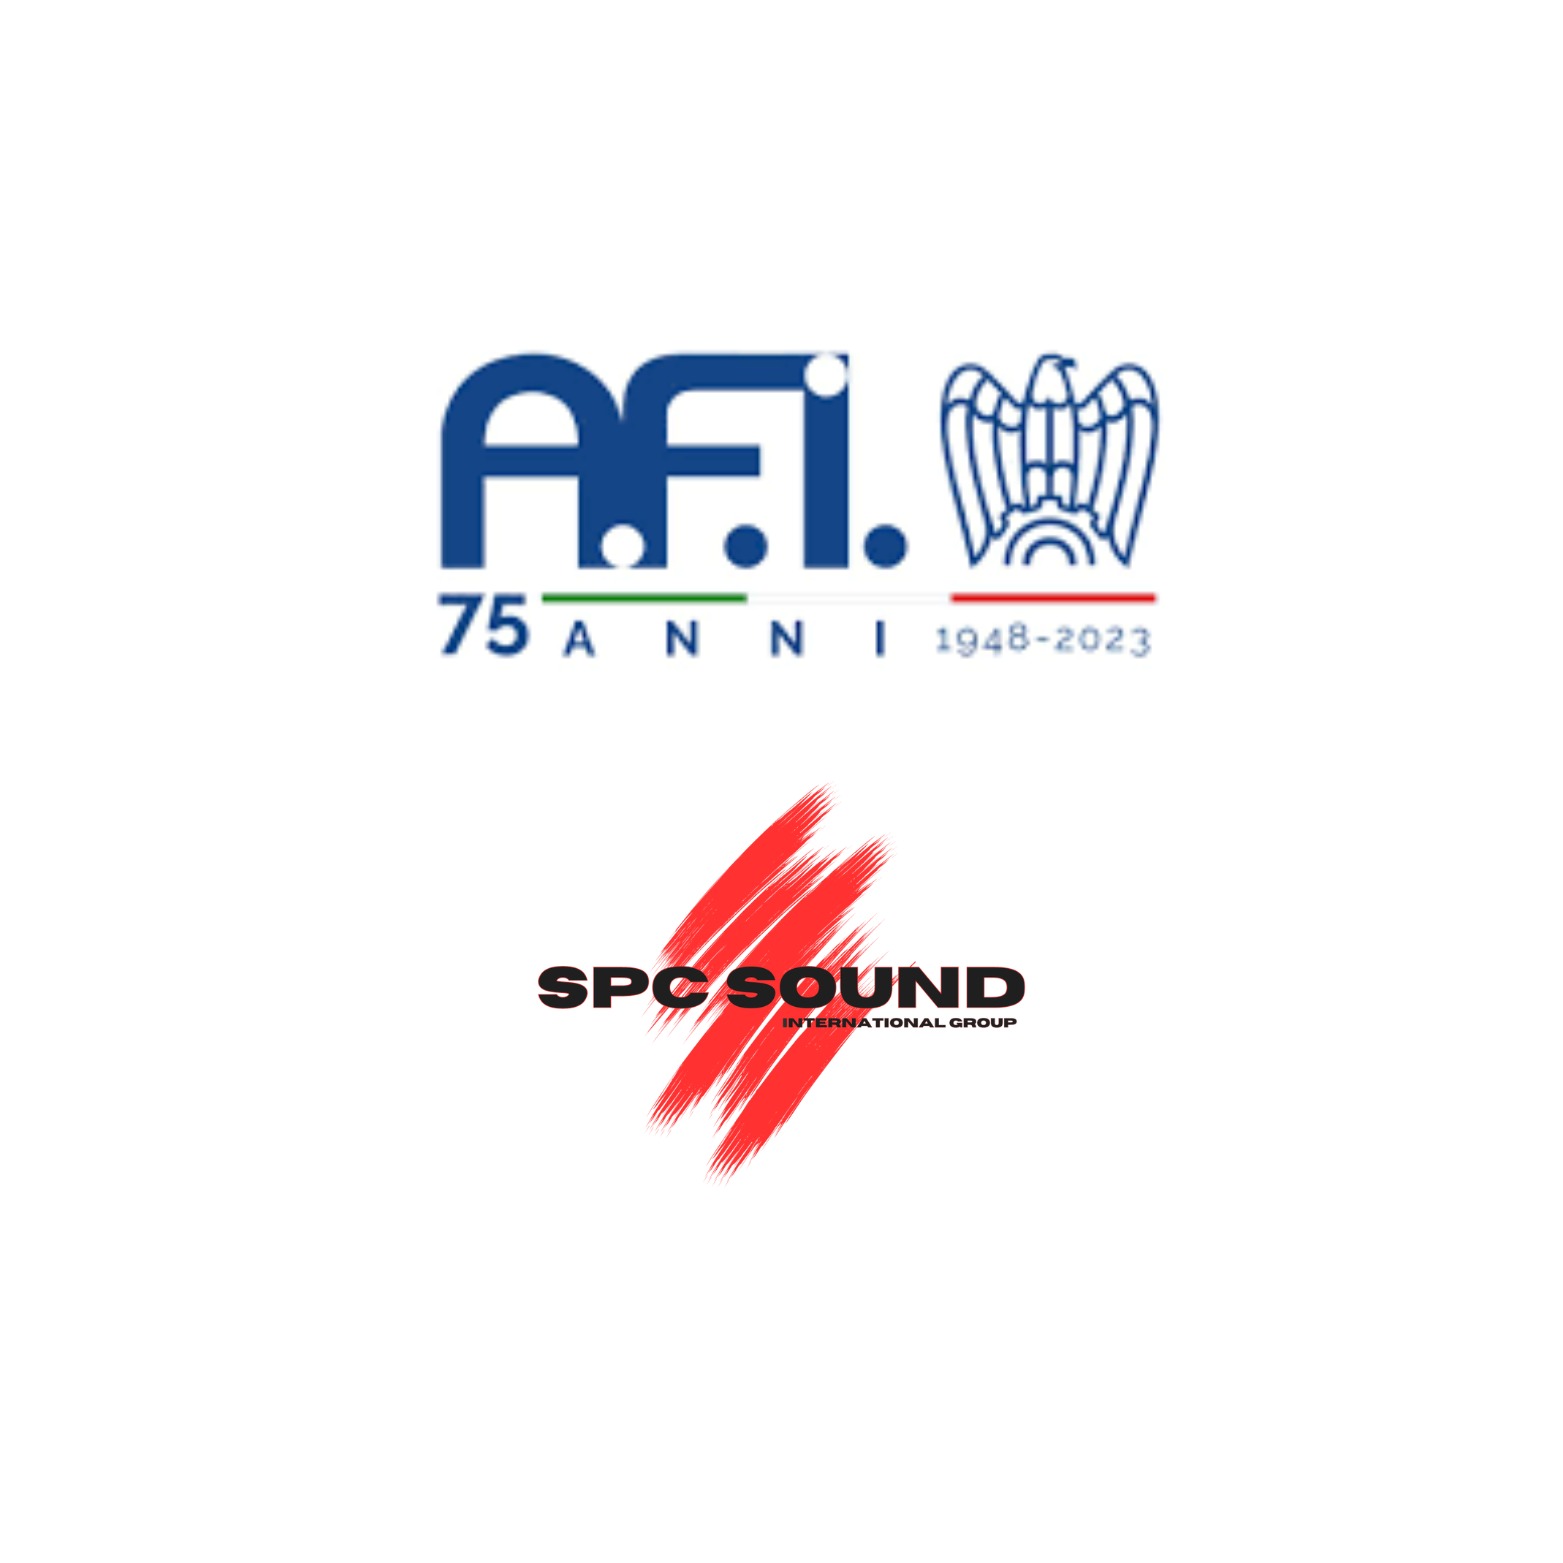 Ufficiale la nomina AFI (Associazione Fonografici Italiani) per il produttore discografico Silvio Pacicca ed SPC Sound Music